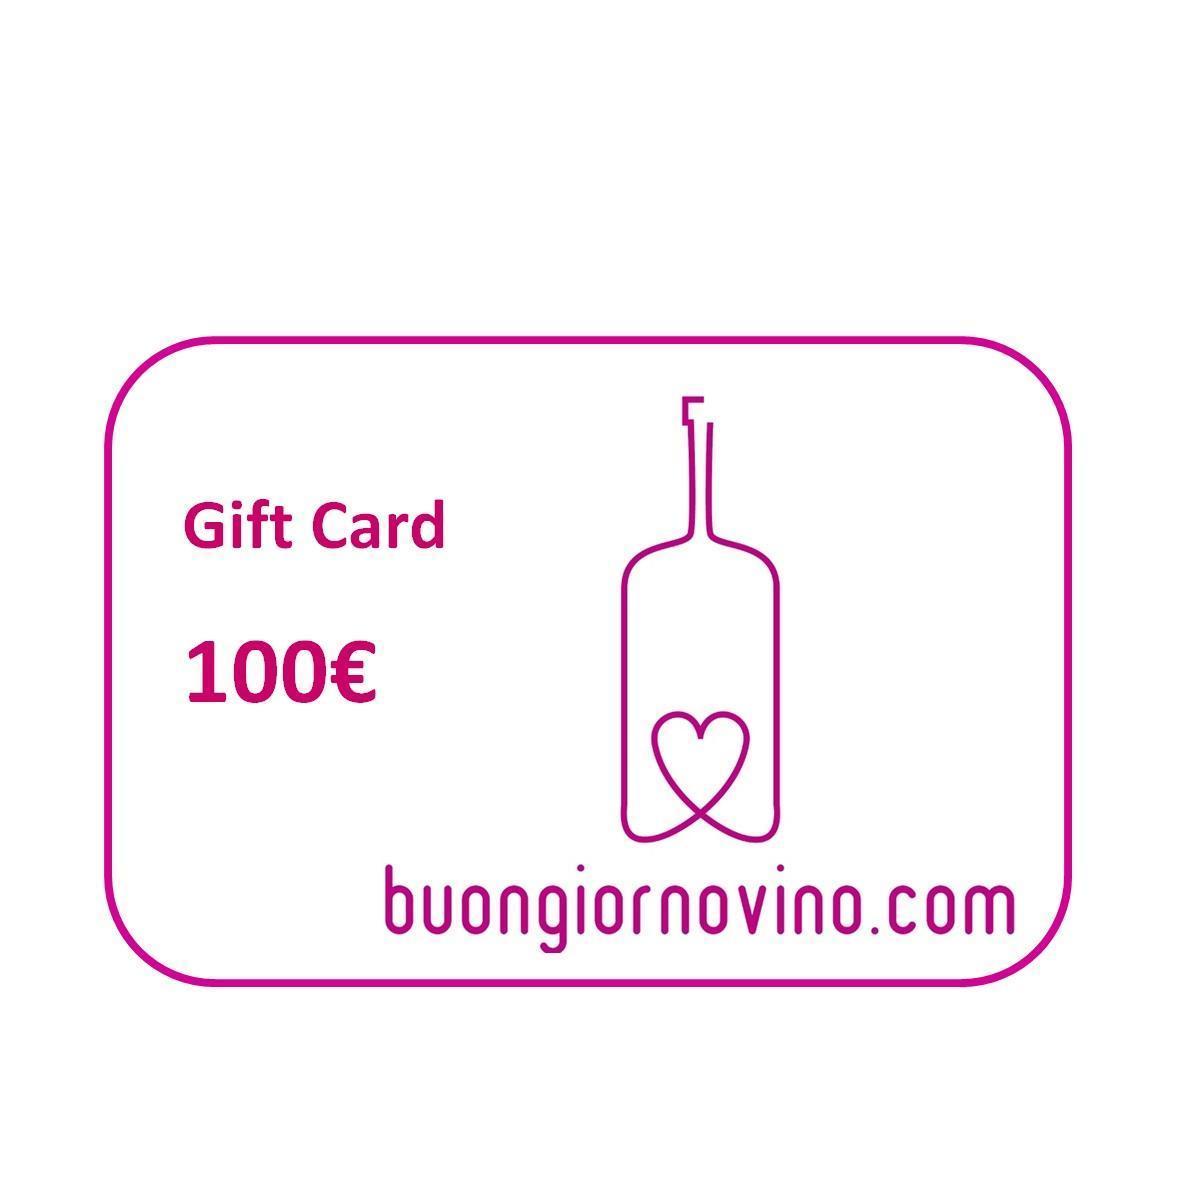 buongiornovino gift card da 100€